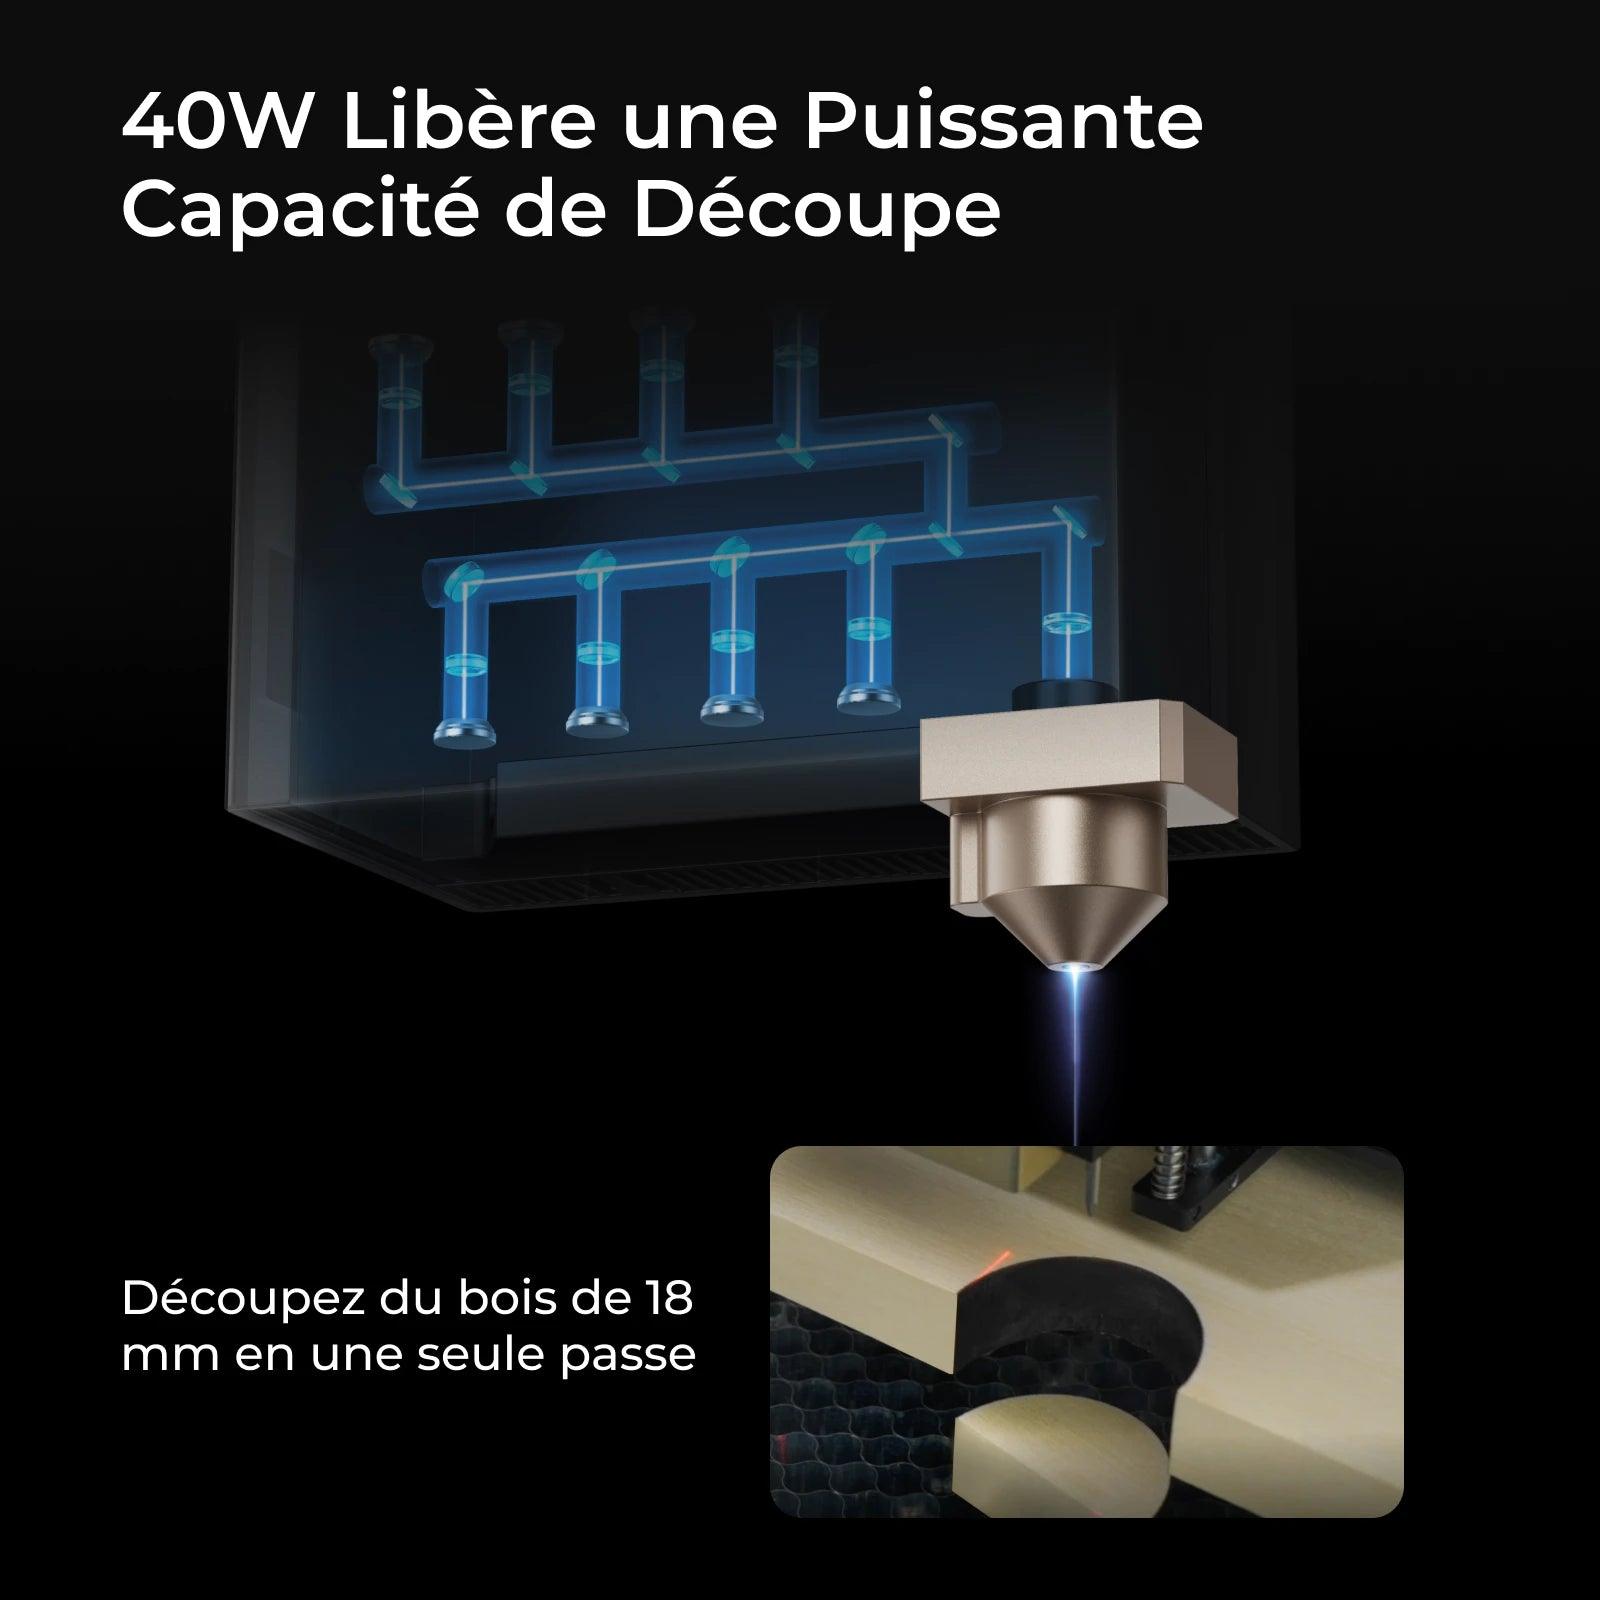 xTool S1 Découpeur Laser à Diode Fermé - xTool France Store